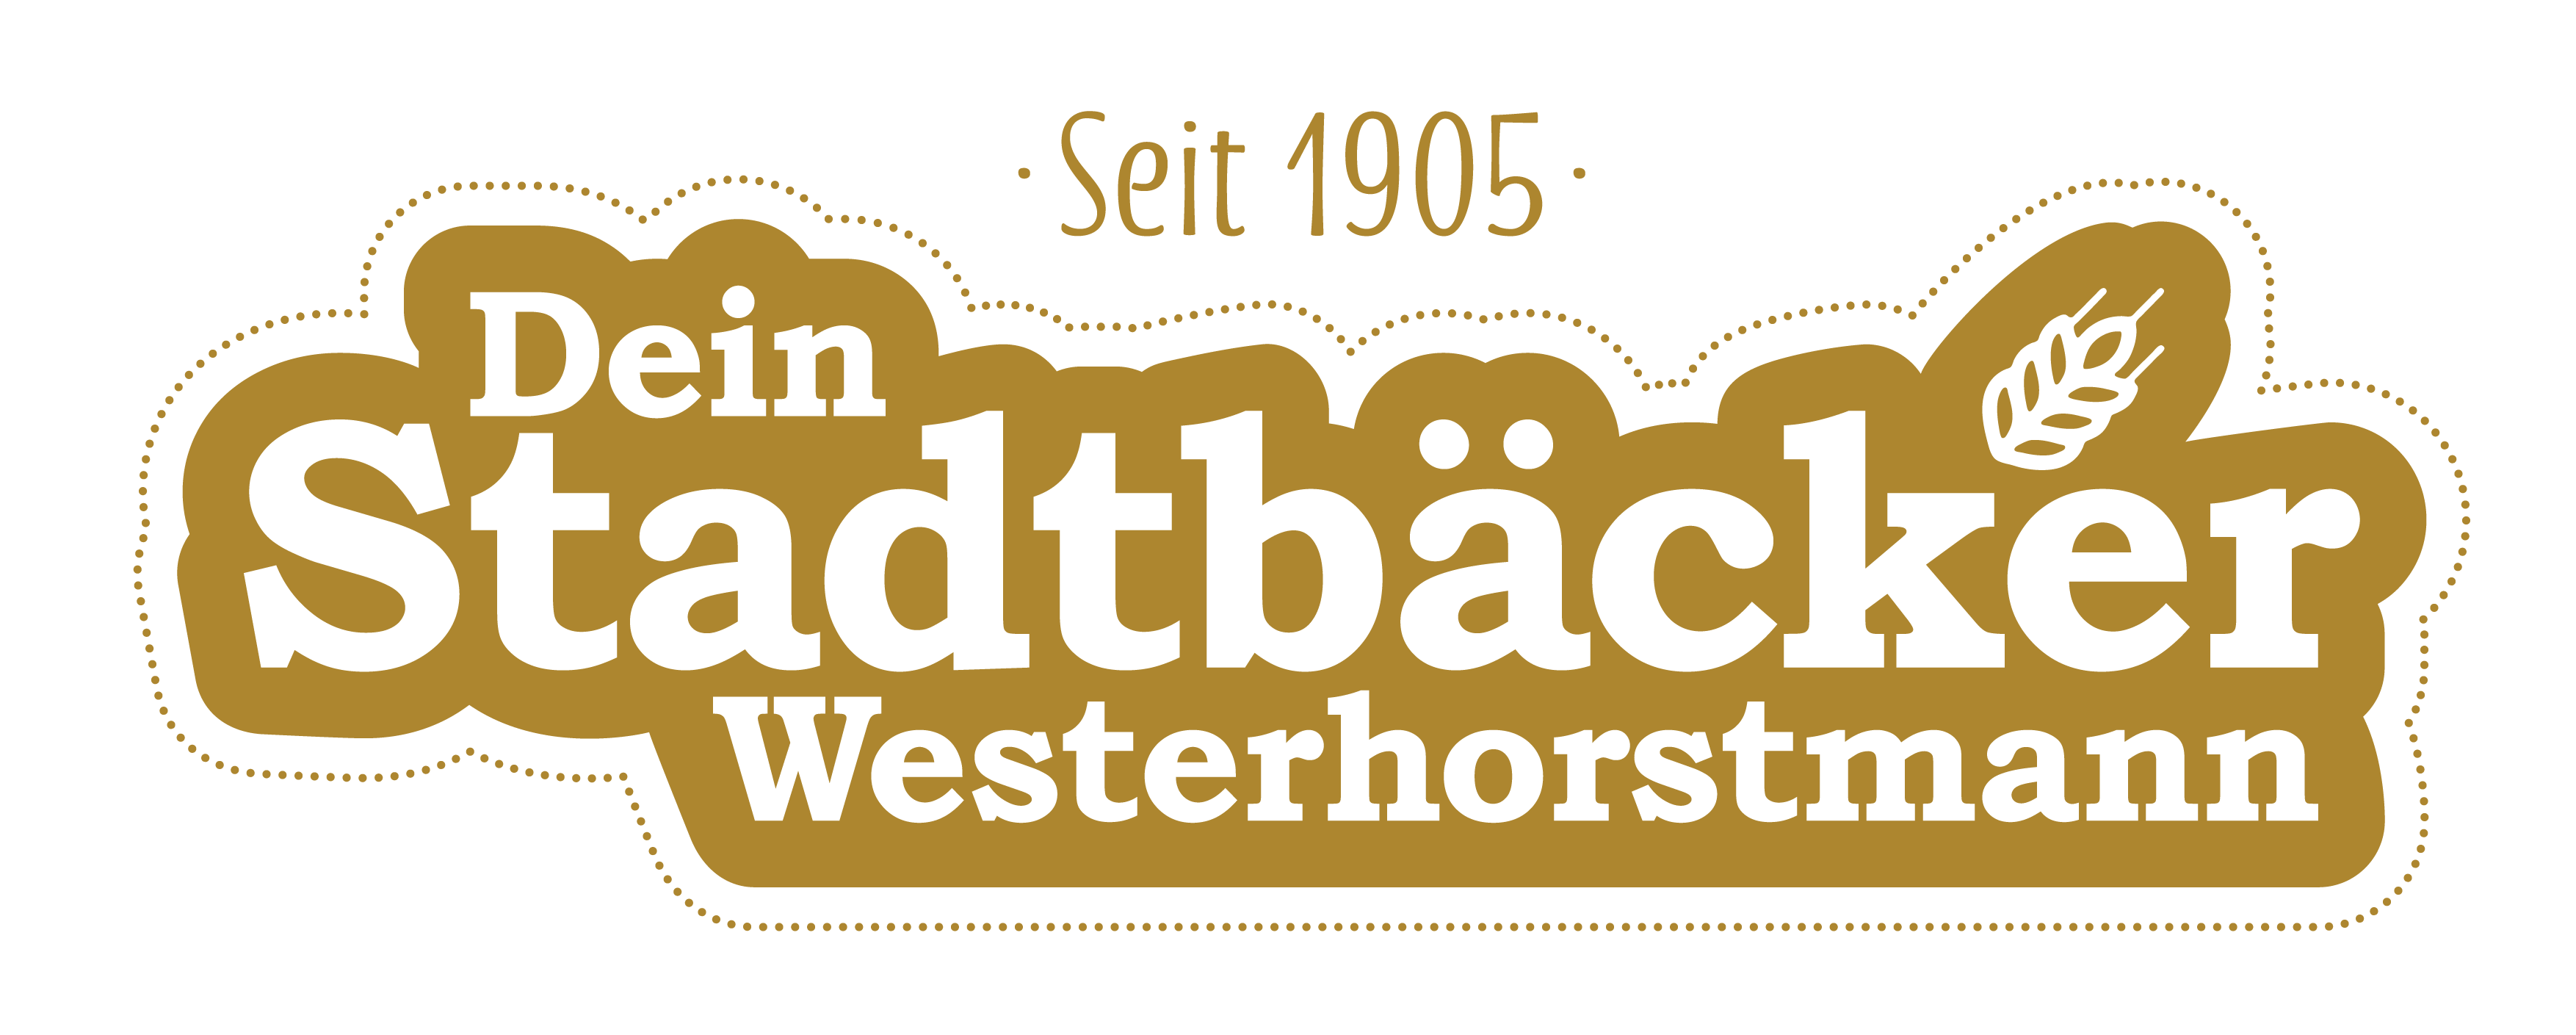 Stadtbäckerei Westerhorstmann GmbH & Co.KG